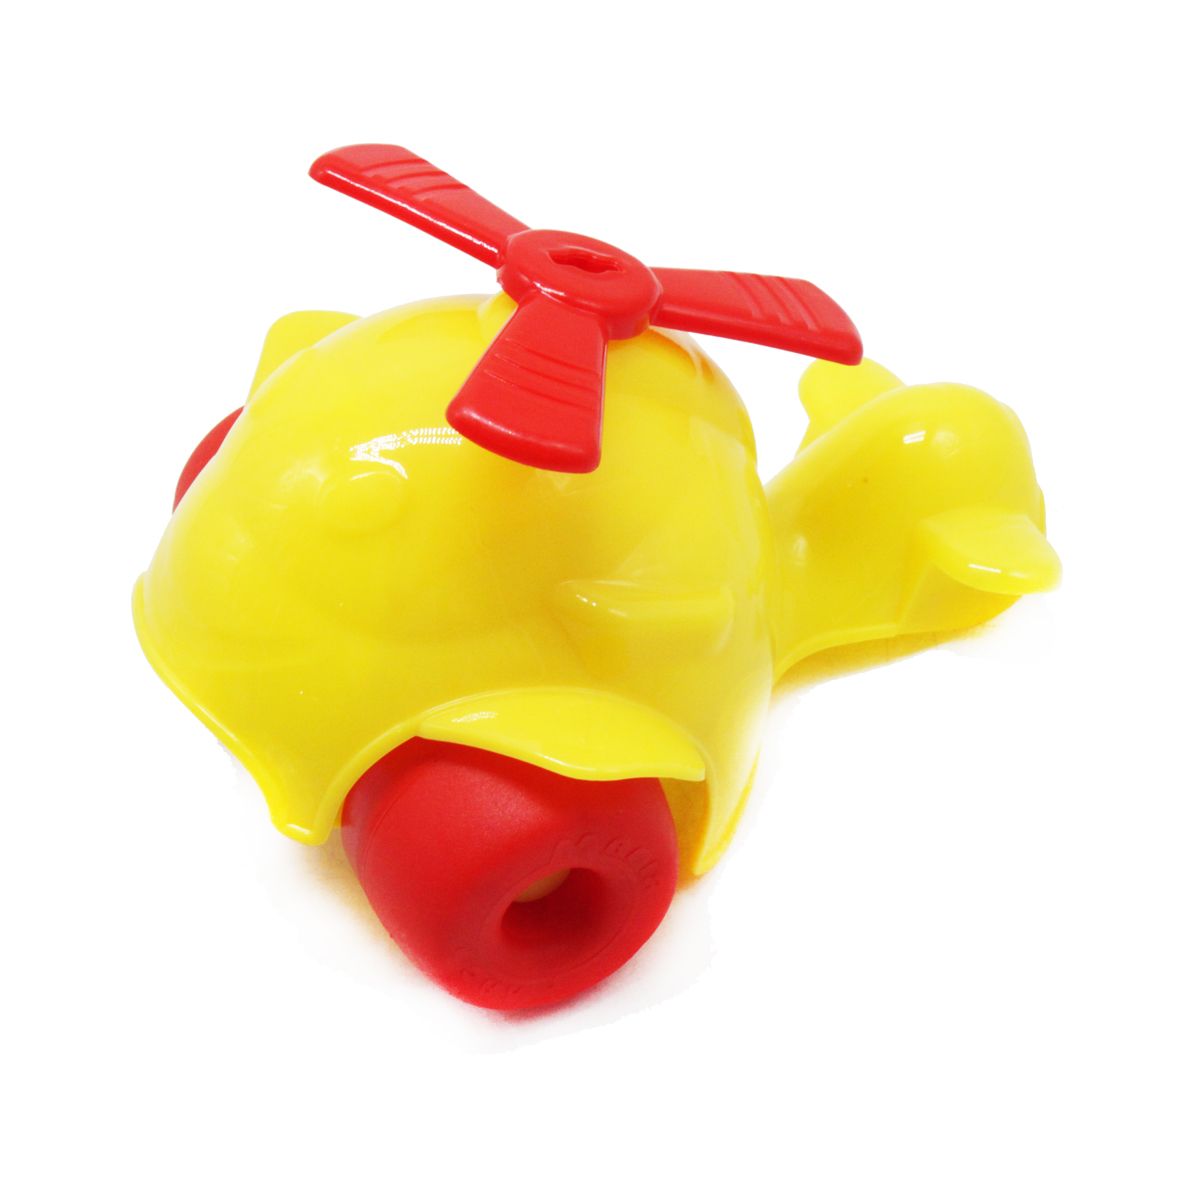 Іграшка-каталка "Вертоліт", жовтий